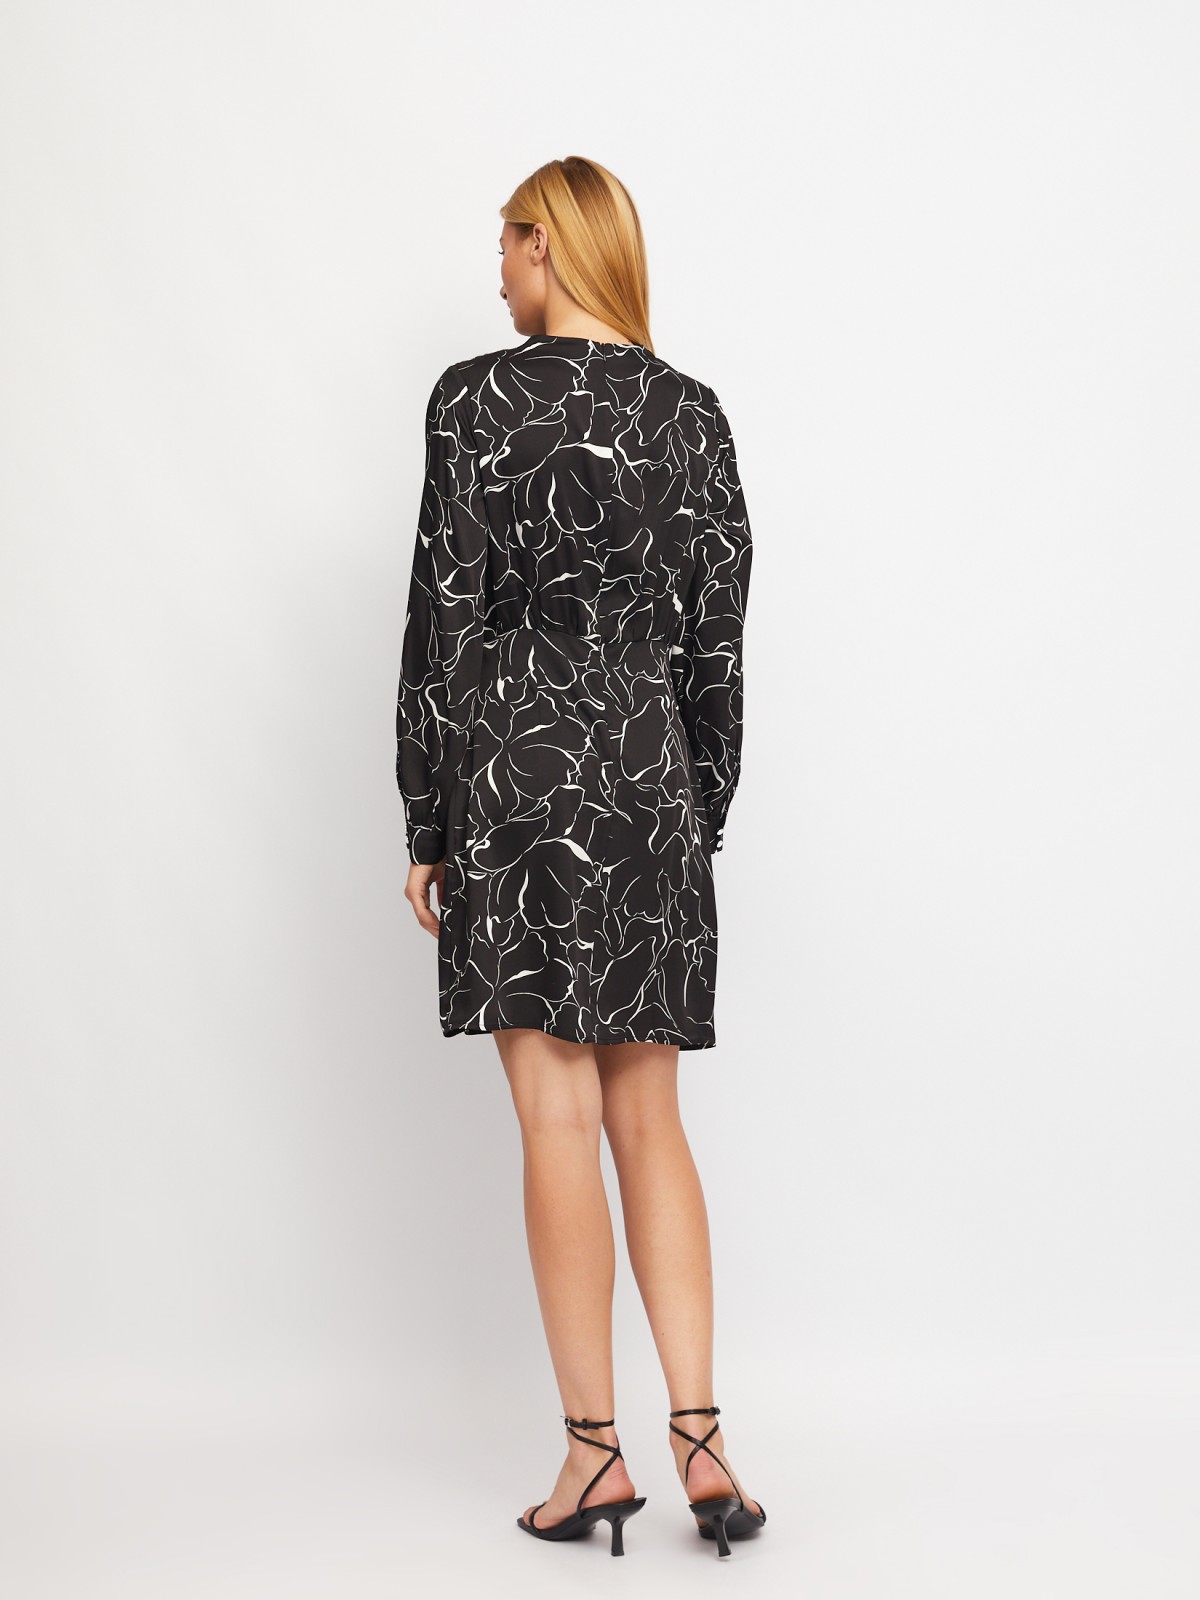 Атласное платье длины мини с драпировкой и подолом на запах zolla 024118262131, цвет черный, размер XS - фото 6